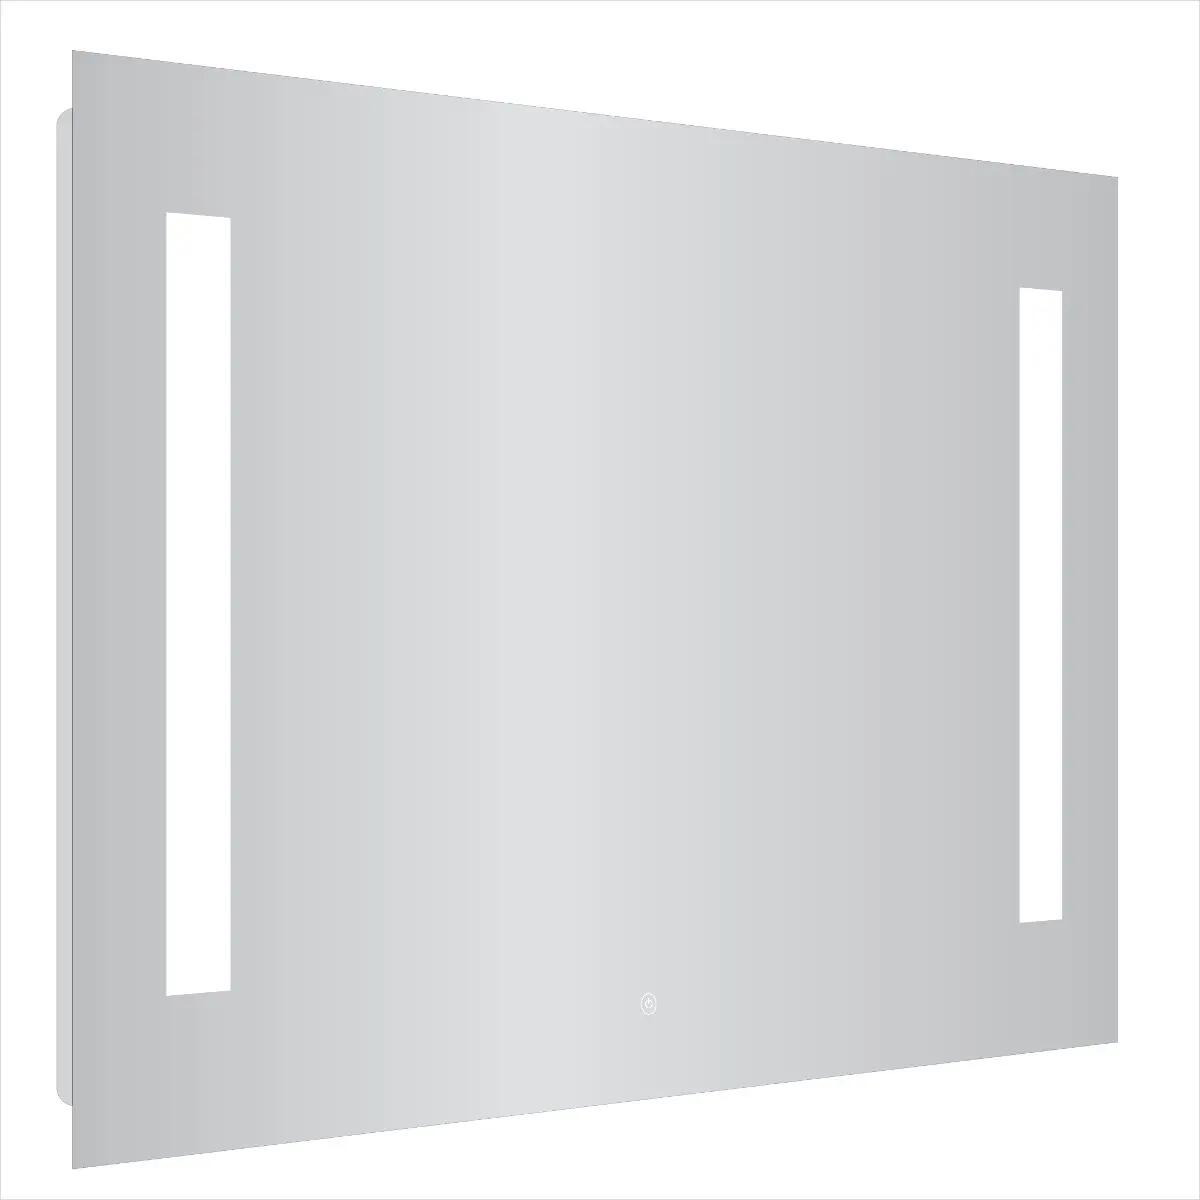 Specchio ID Noemi21 specchio da bagno a LED con illuminazione design tutto intorno a seconda delle dimensioni – a scelta: larghezza 80 x altezza 60 cm – bianco neutro prodotto in Germania